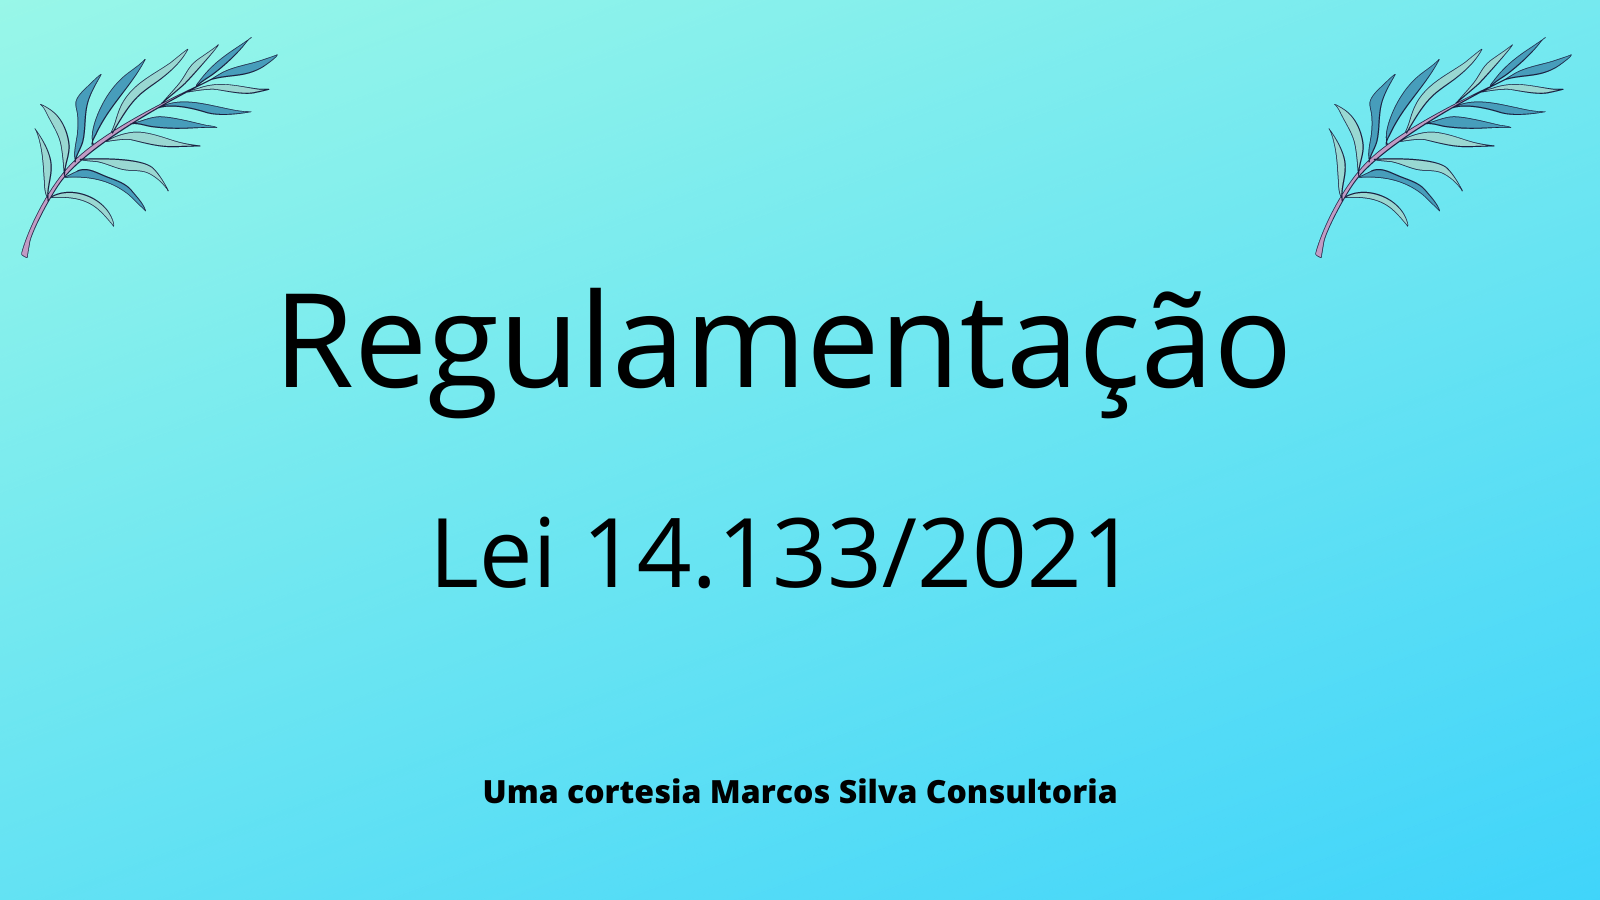 Regulamentação da Lei 14.133/2021